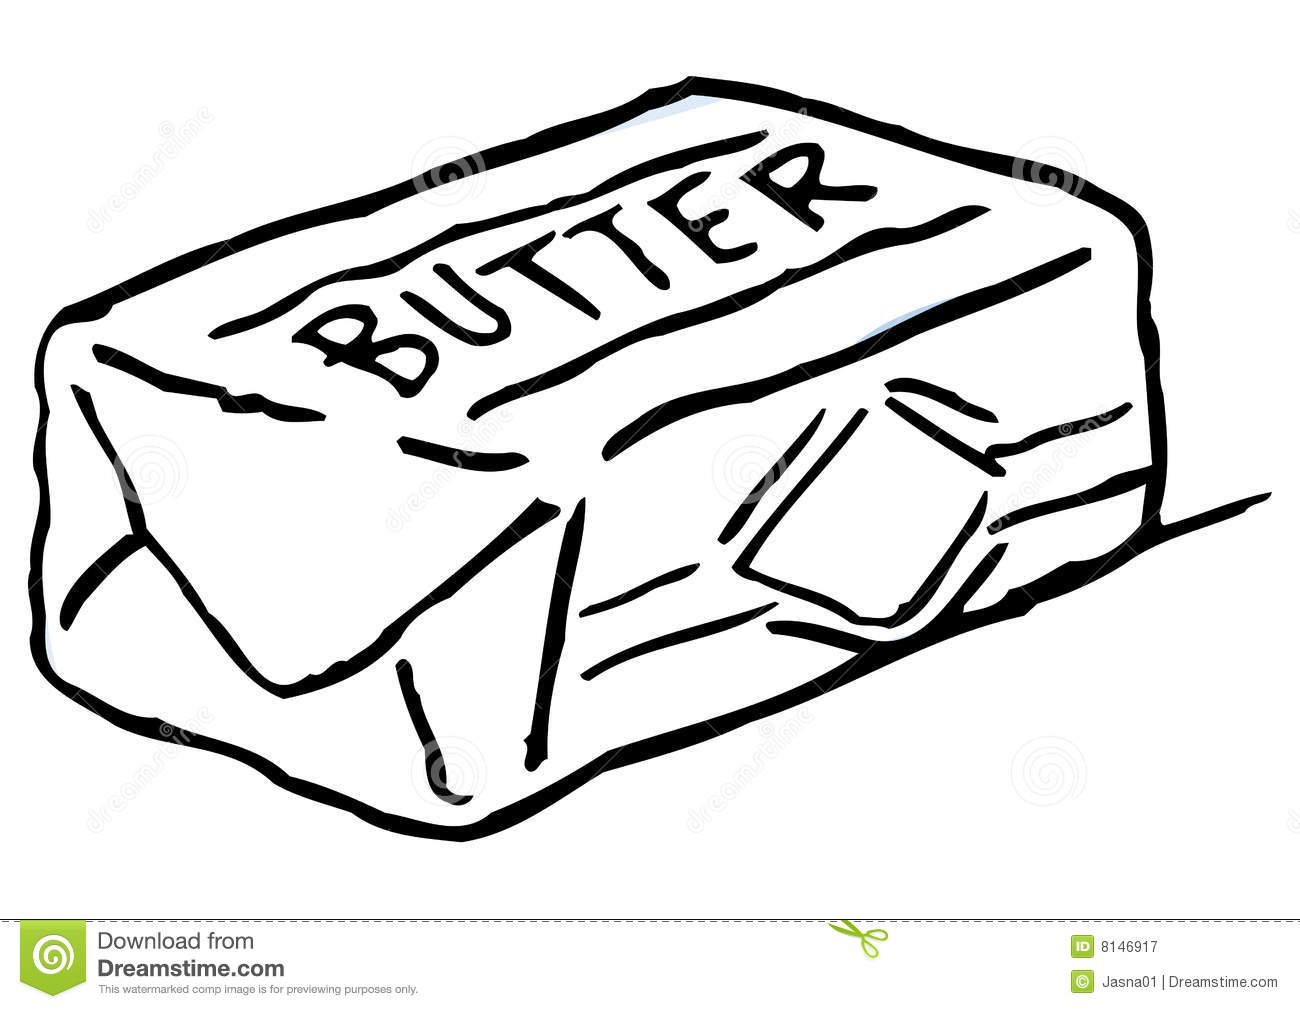 butter clipart